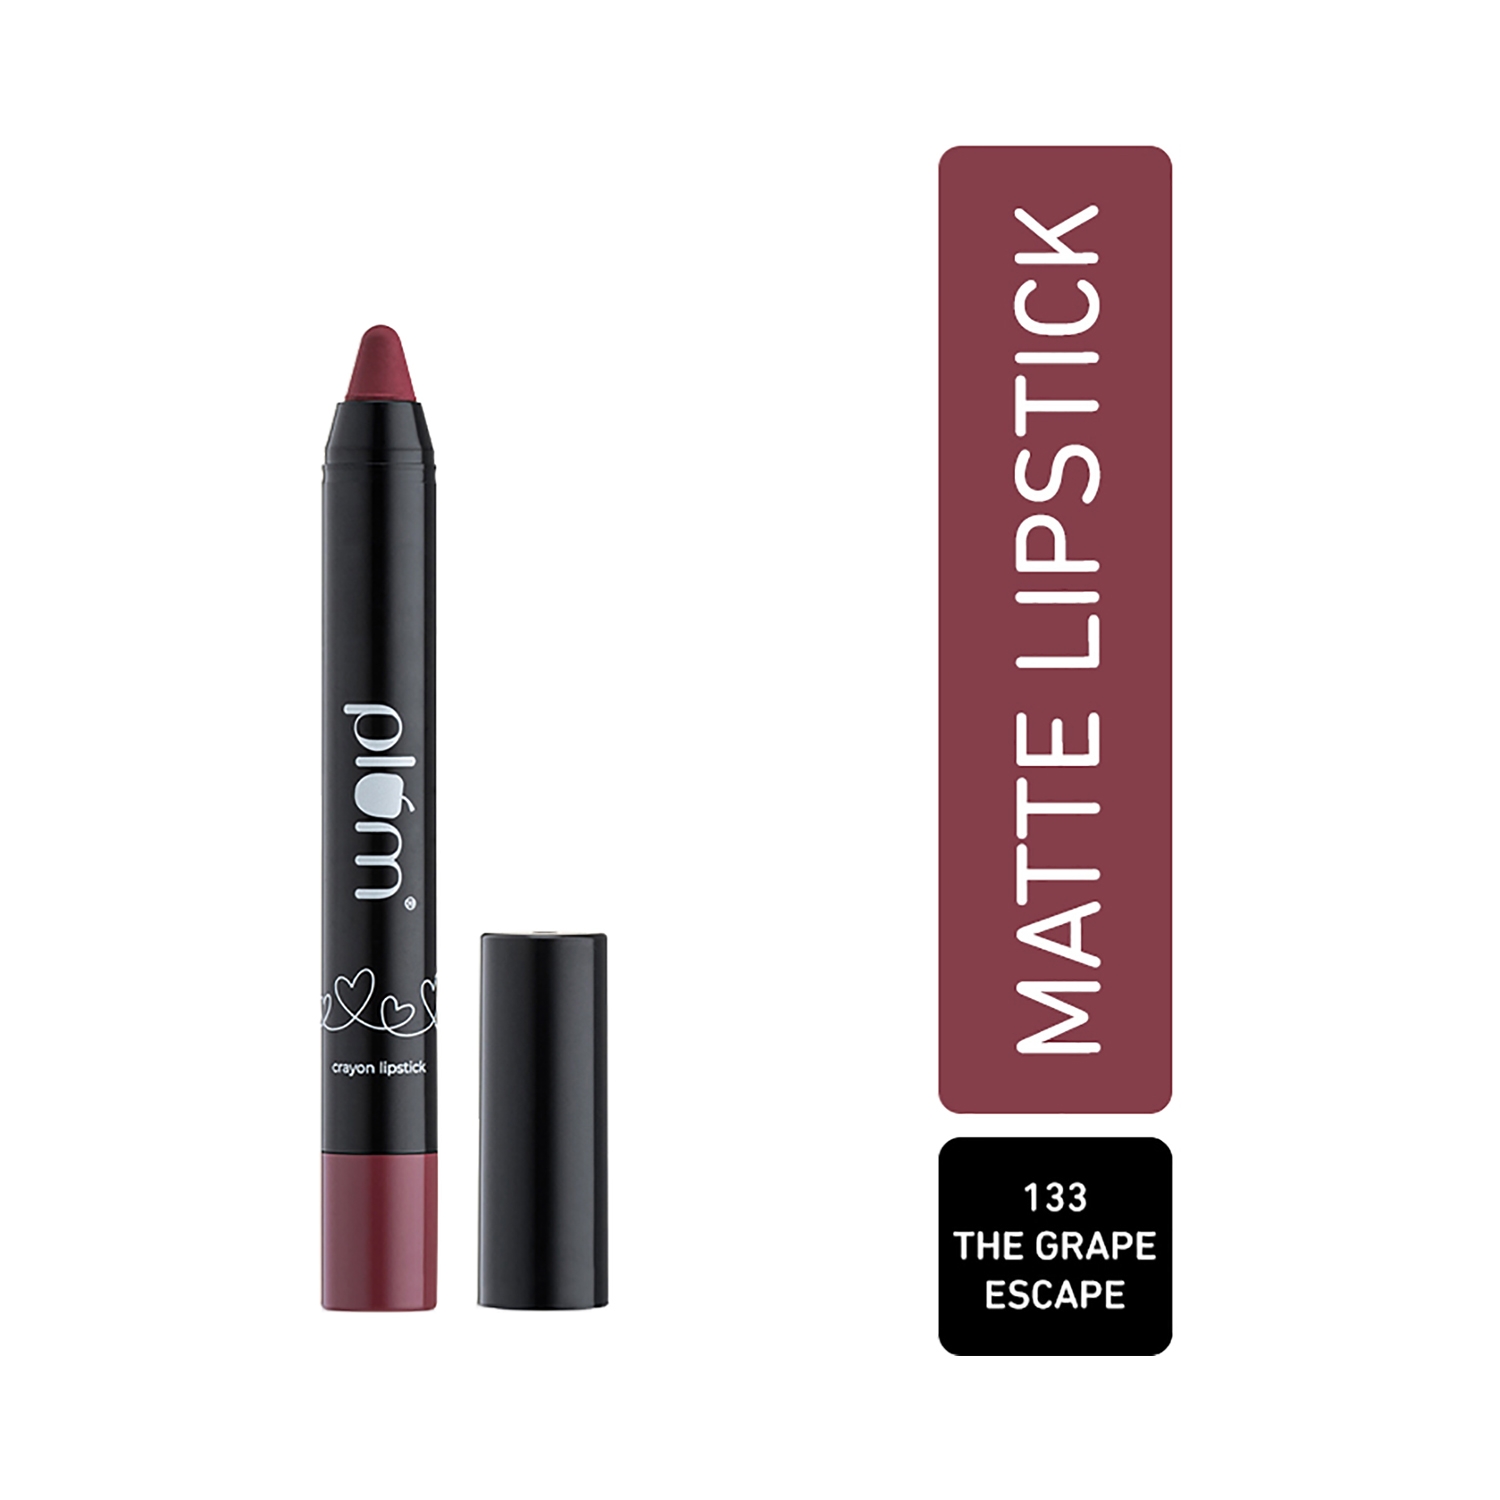 Plum | Plum Twist & Go Matte Crayon Lipstick with Ceramides & Hyaluronic Acid - 133 The Grape Escape (1.8g)